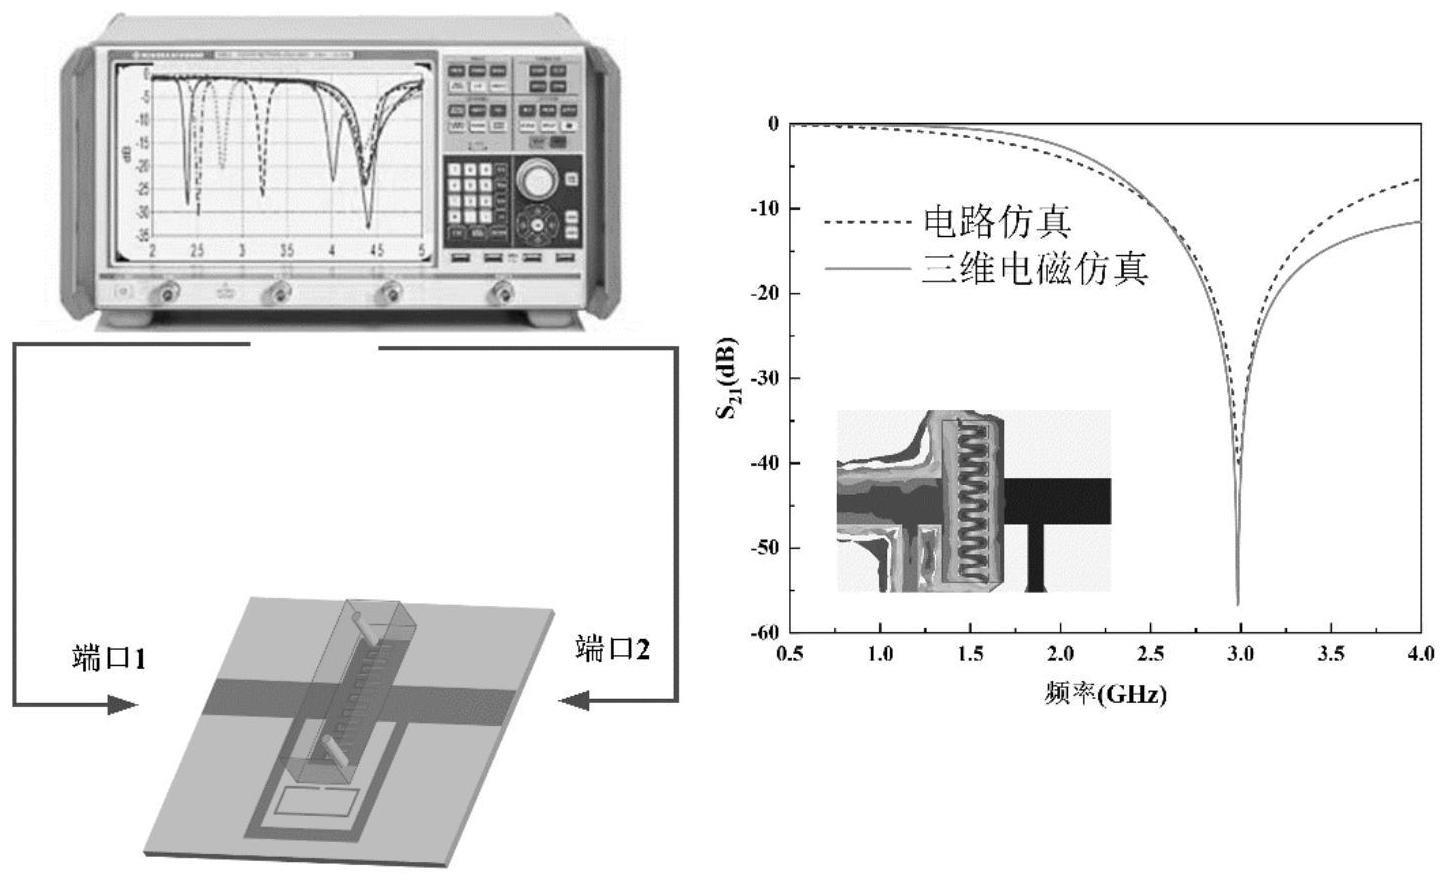 用于液体复介电常数测量的微波传感器及其设计方法